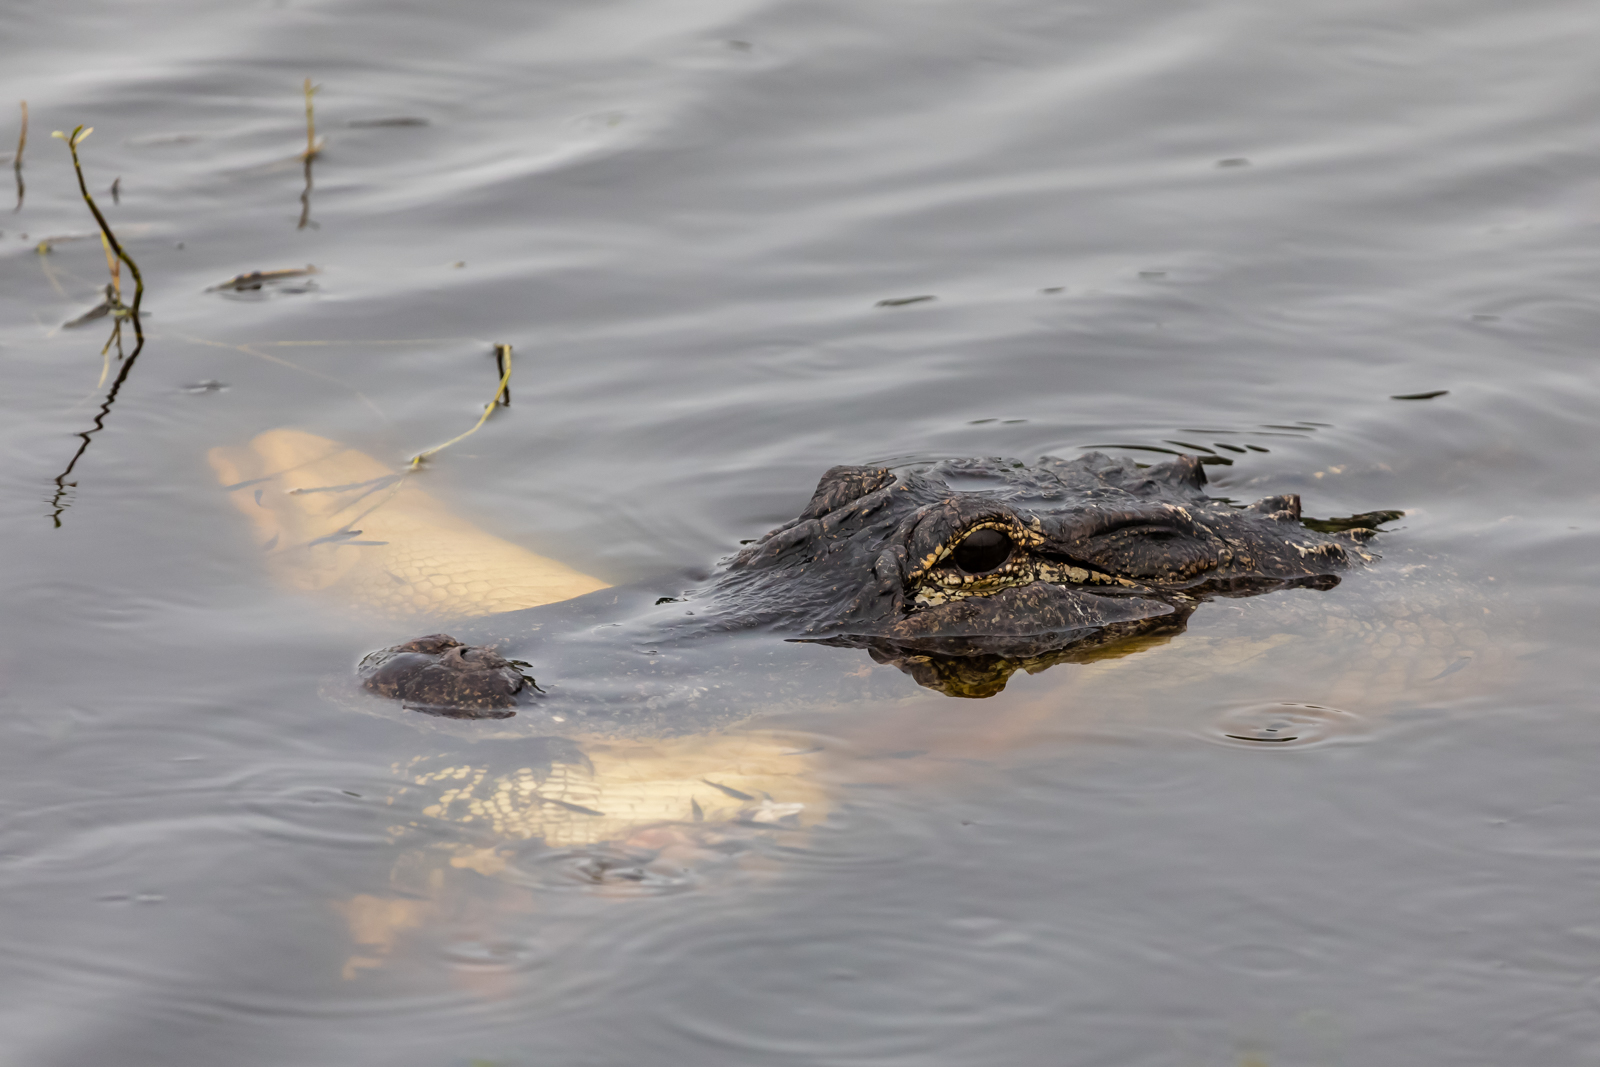 Gator eating gator, Circle B Bar Reserve, Lakeland, Florida